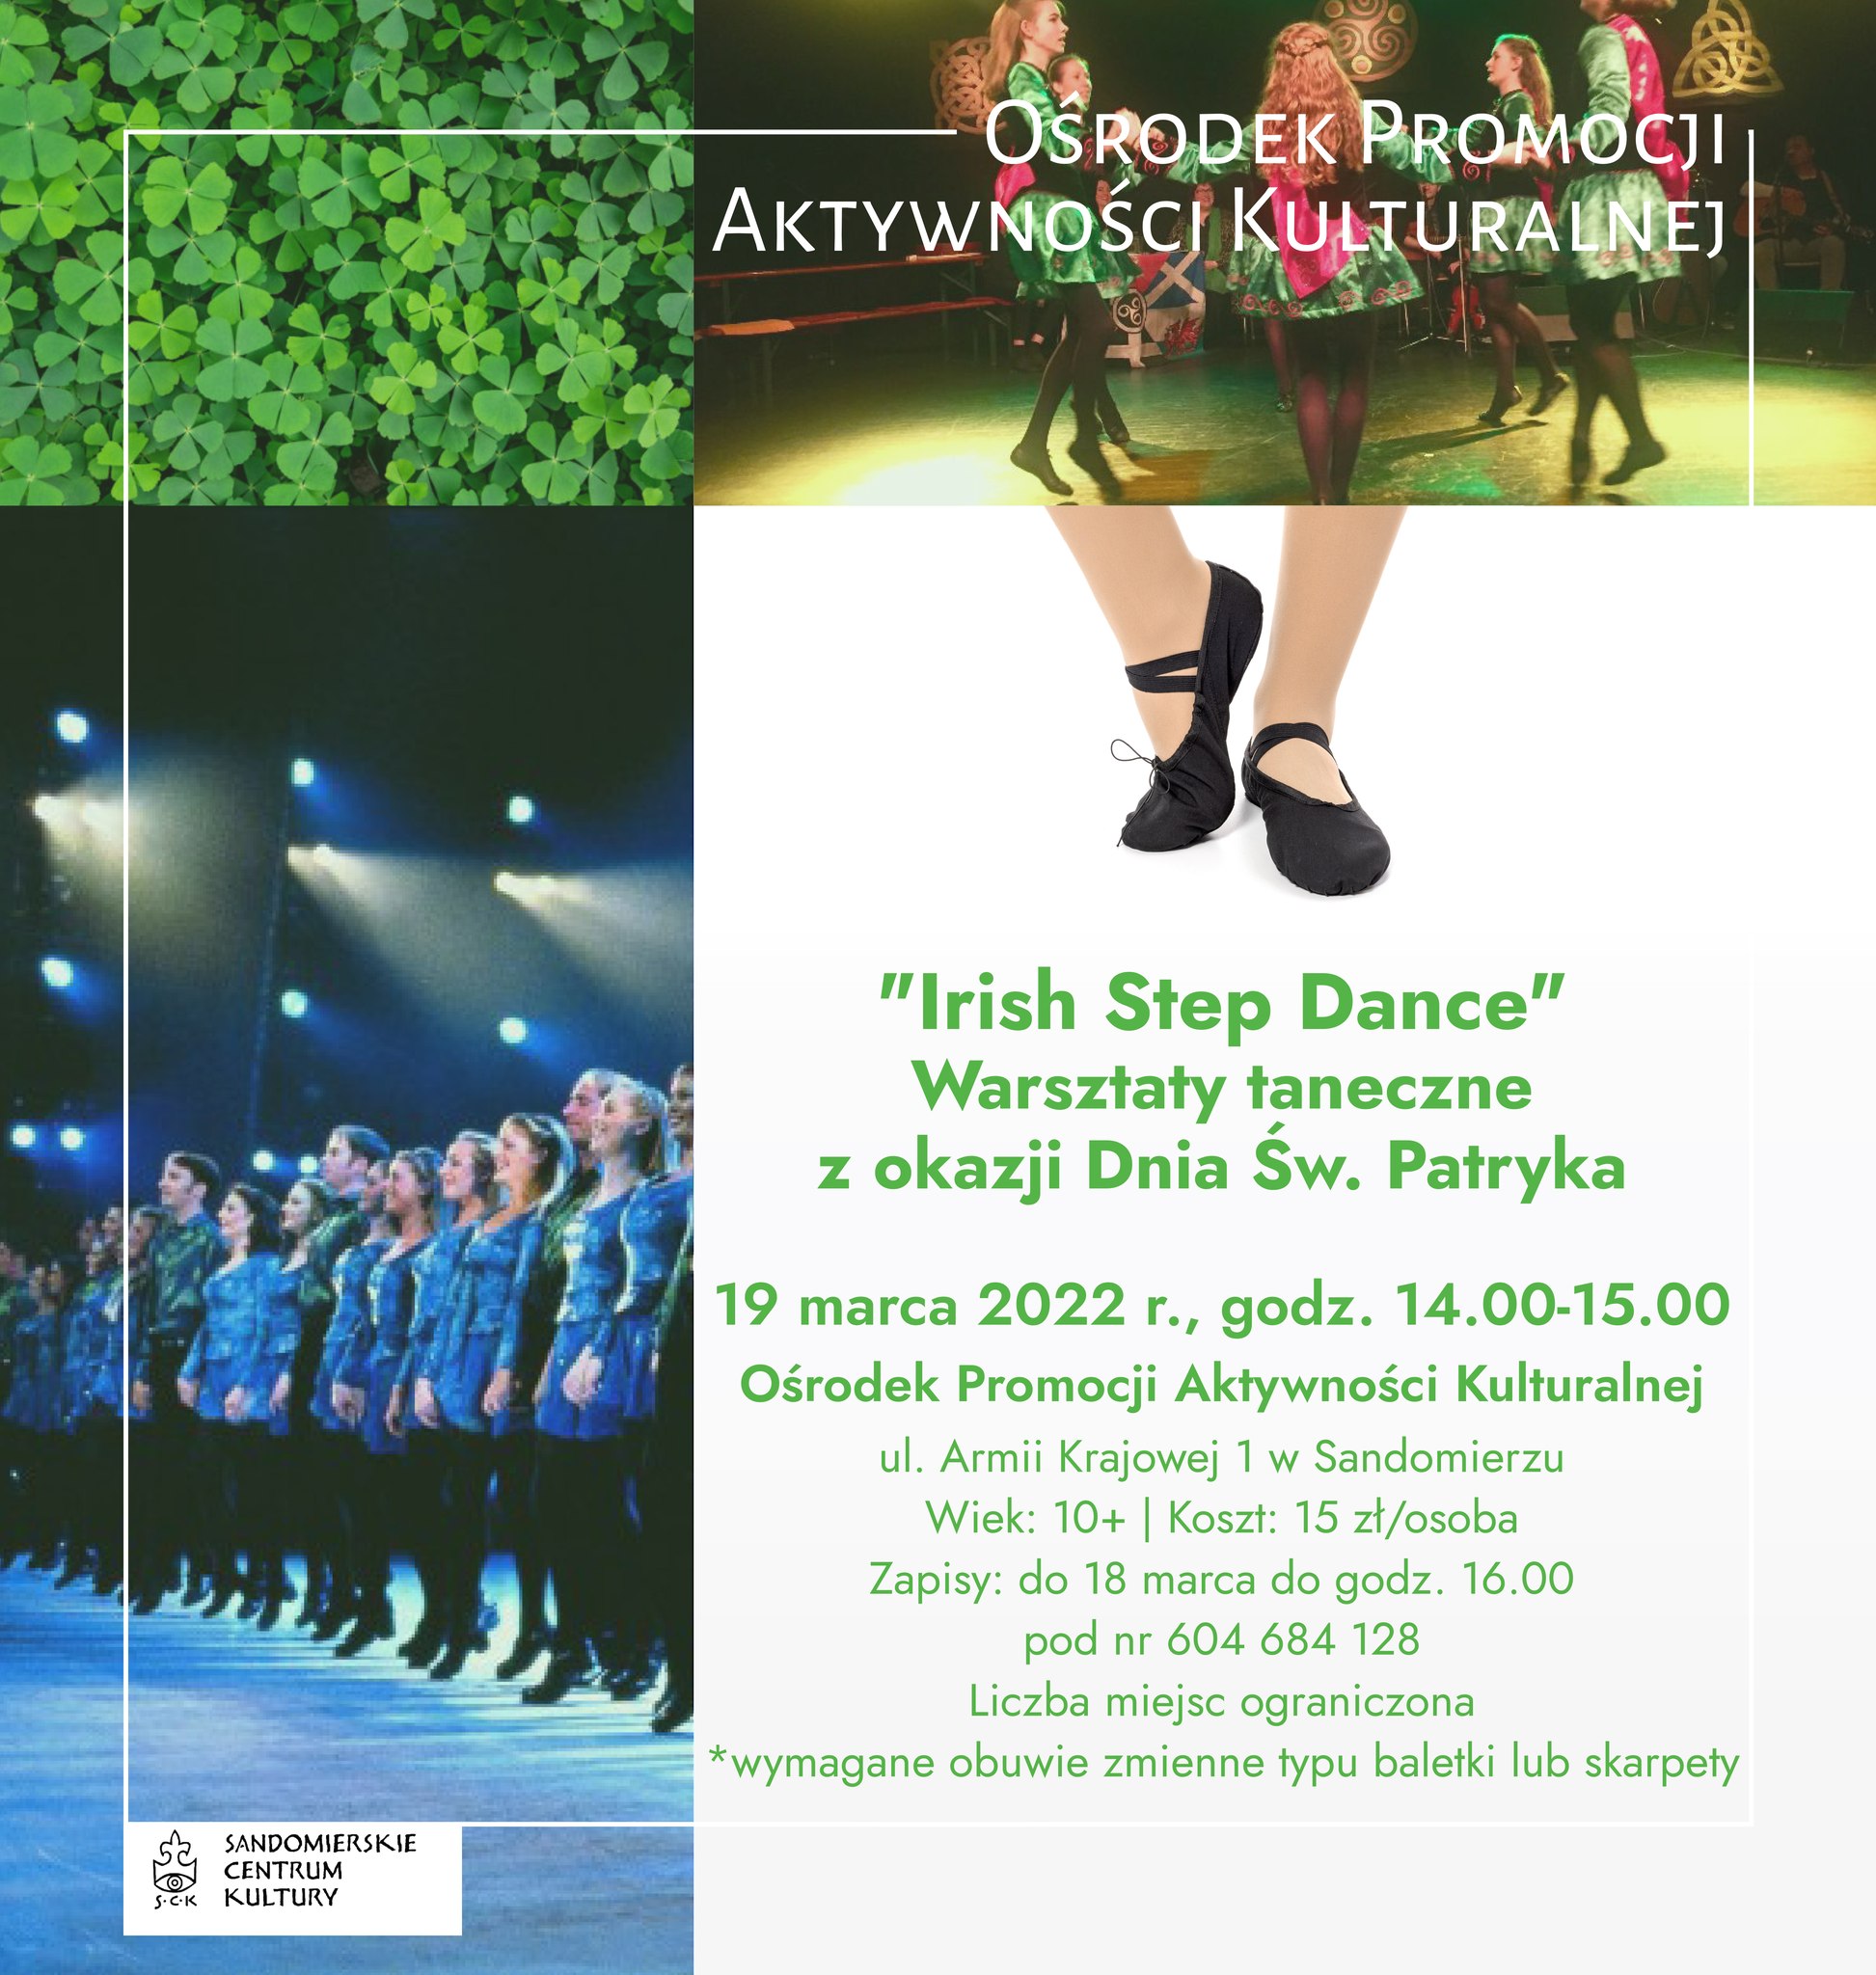 "Irish Step Dance" - warsztaty taneczne z okazji Dnia Św. Patryk